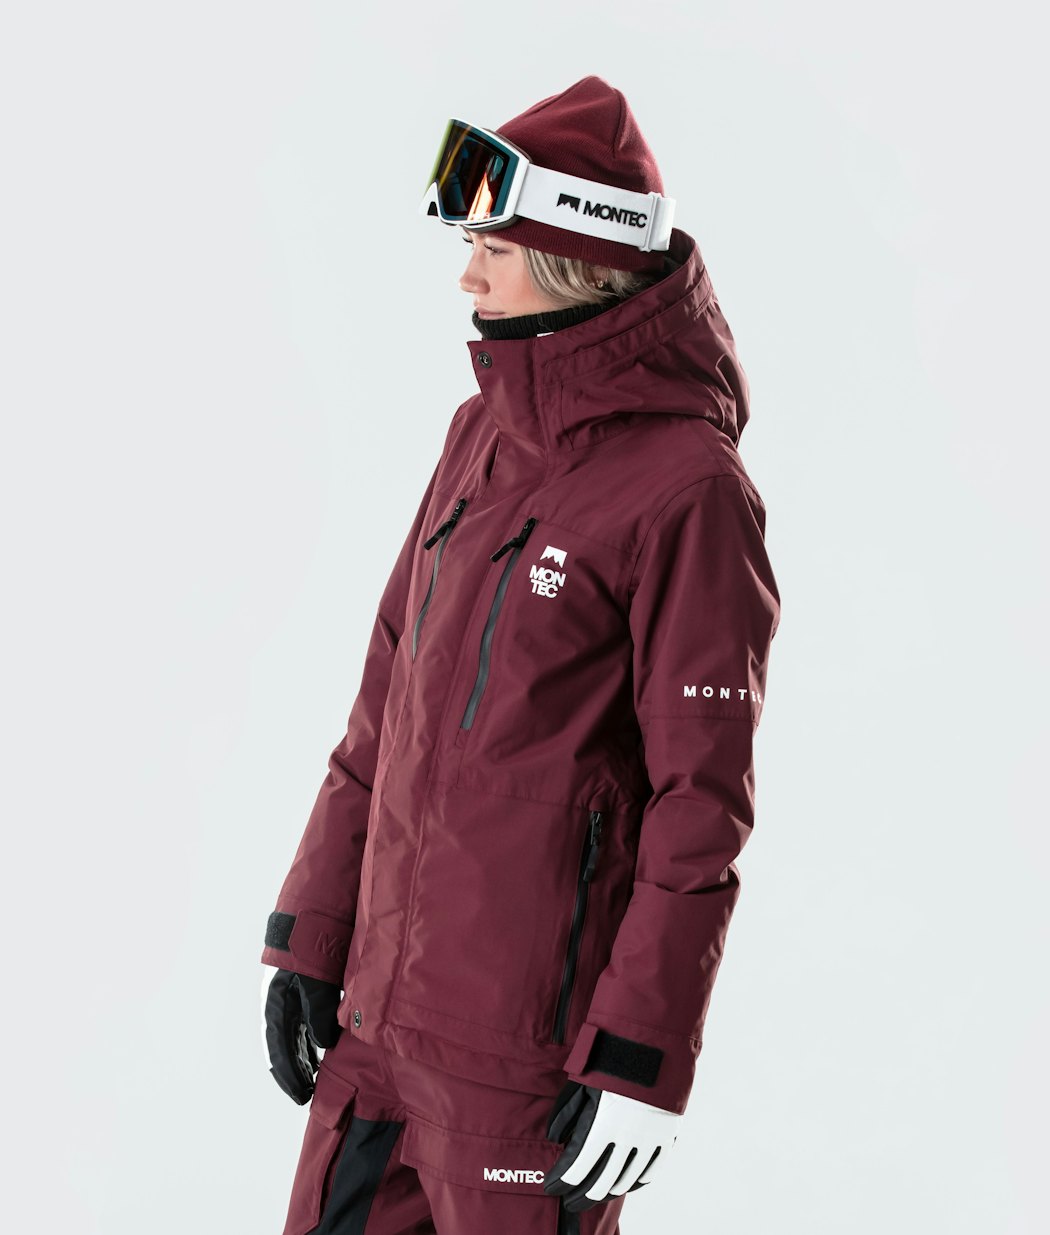 Fawk W 2020 Ski Jacket Women Burgundy